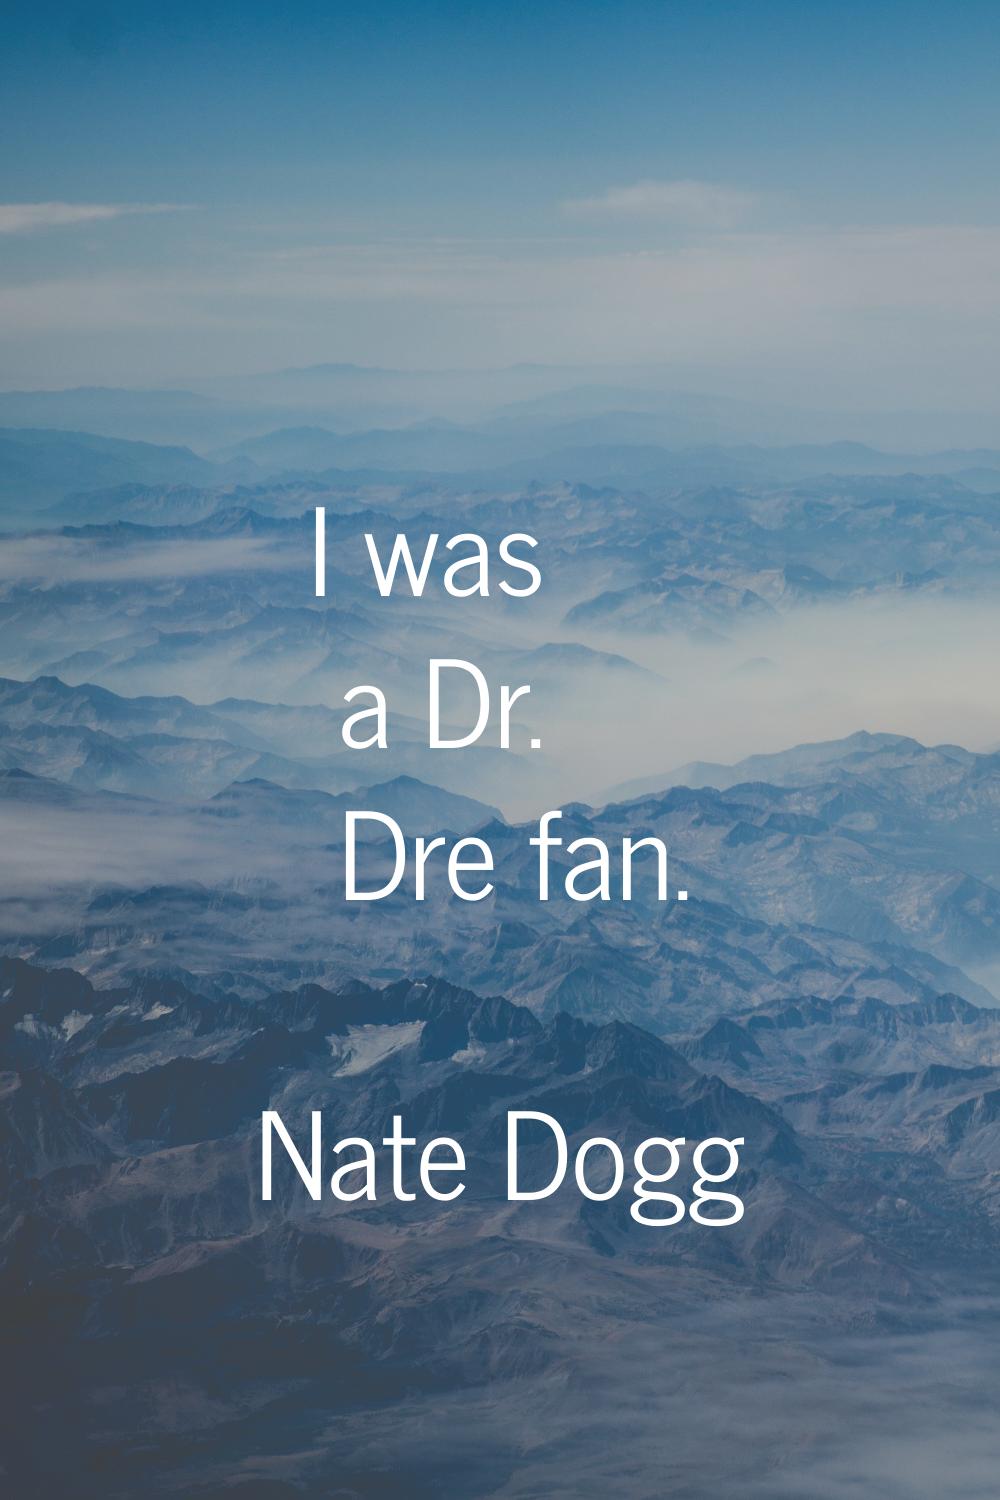 I was a Dr. Dre fan.